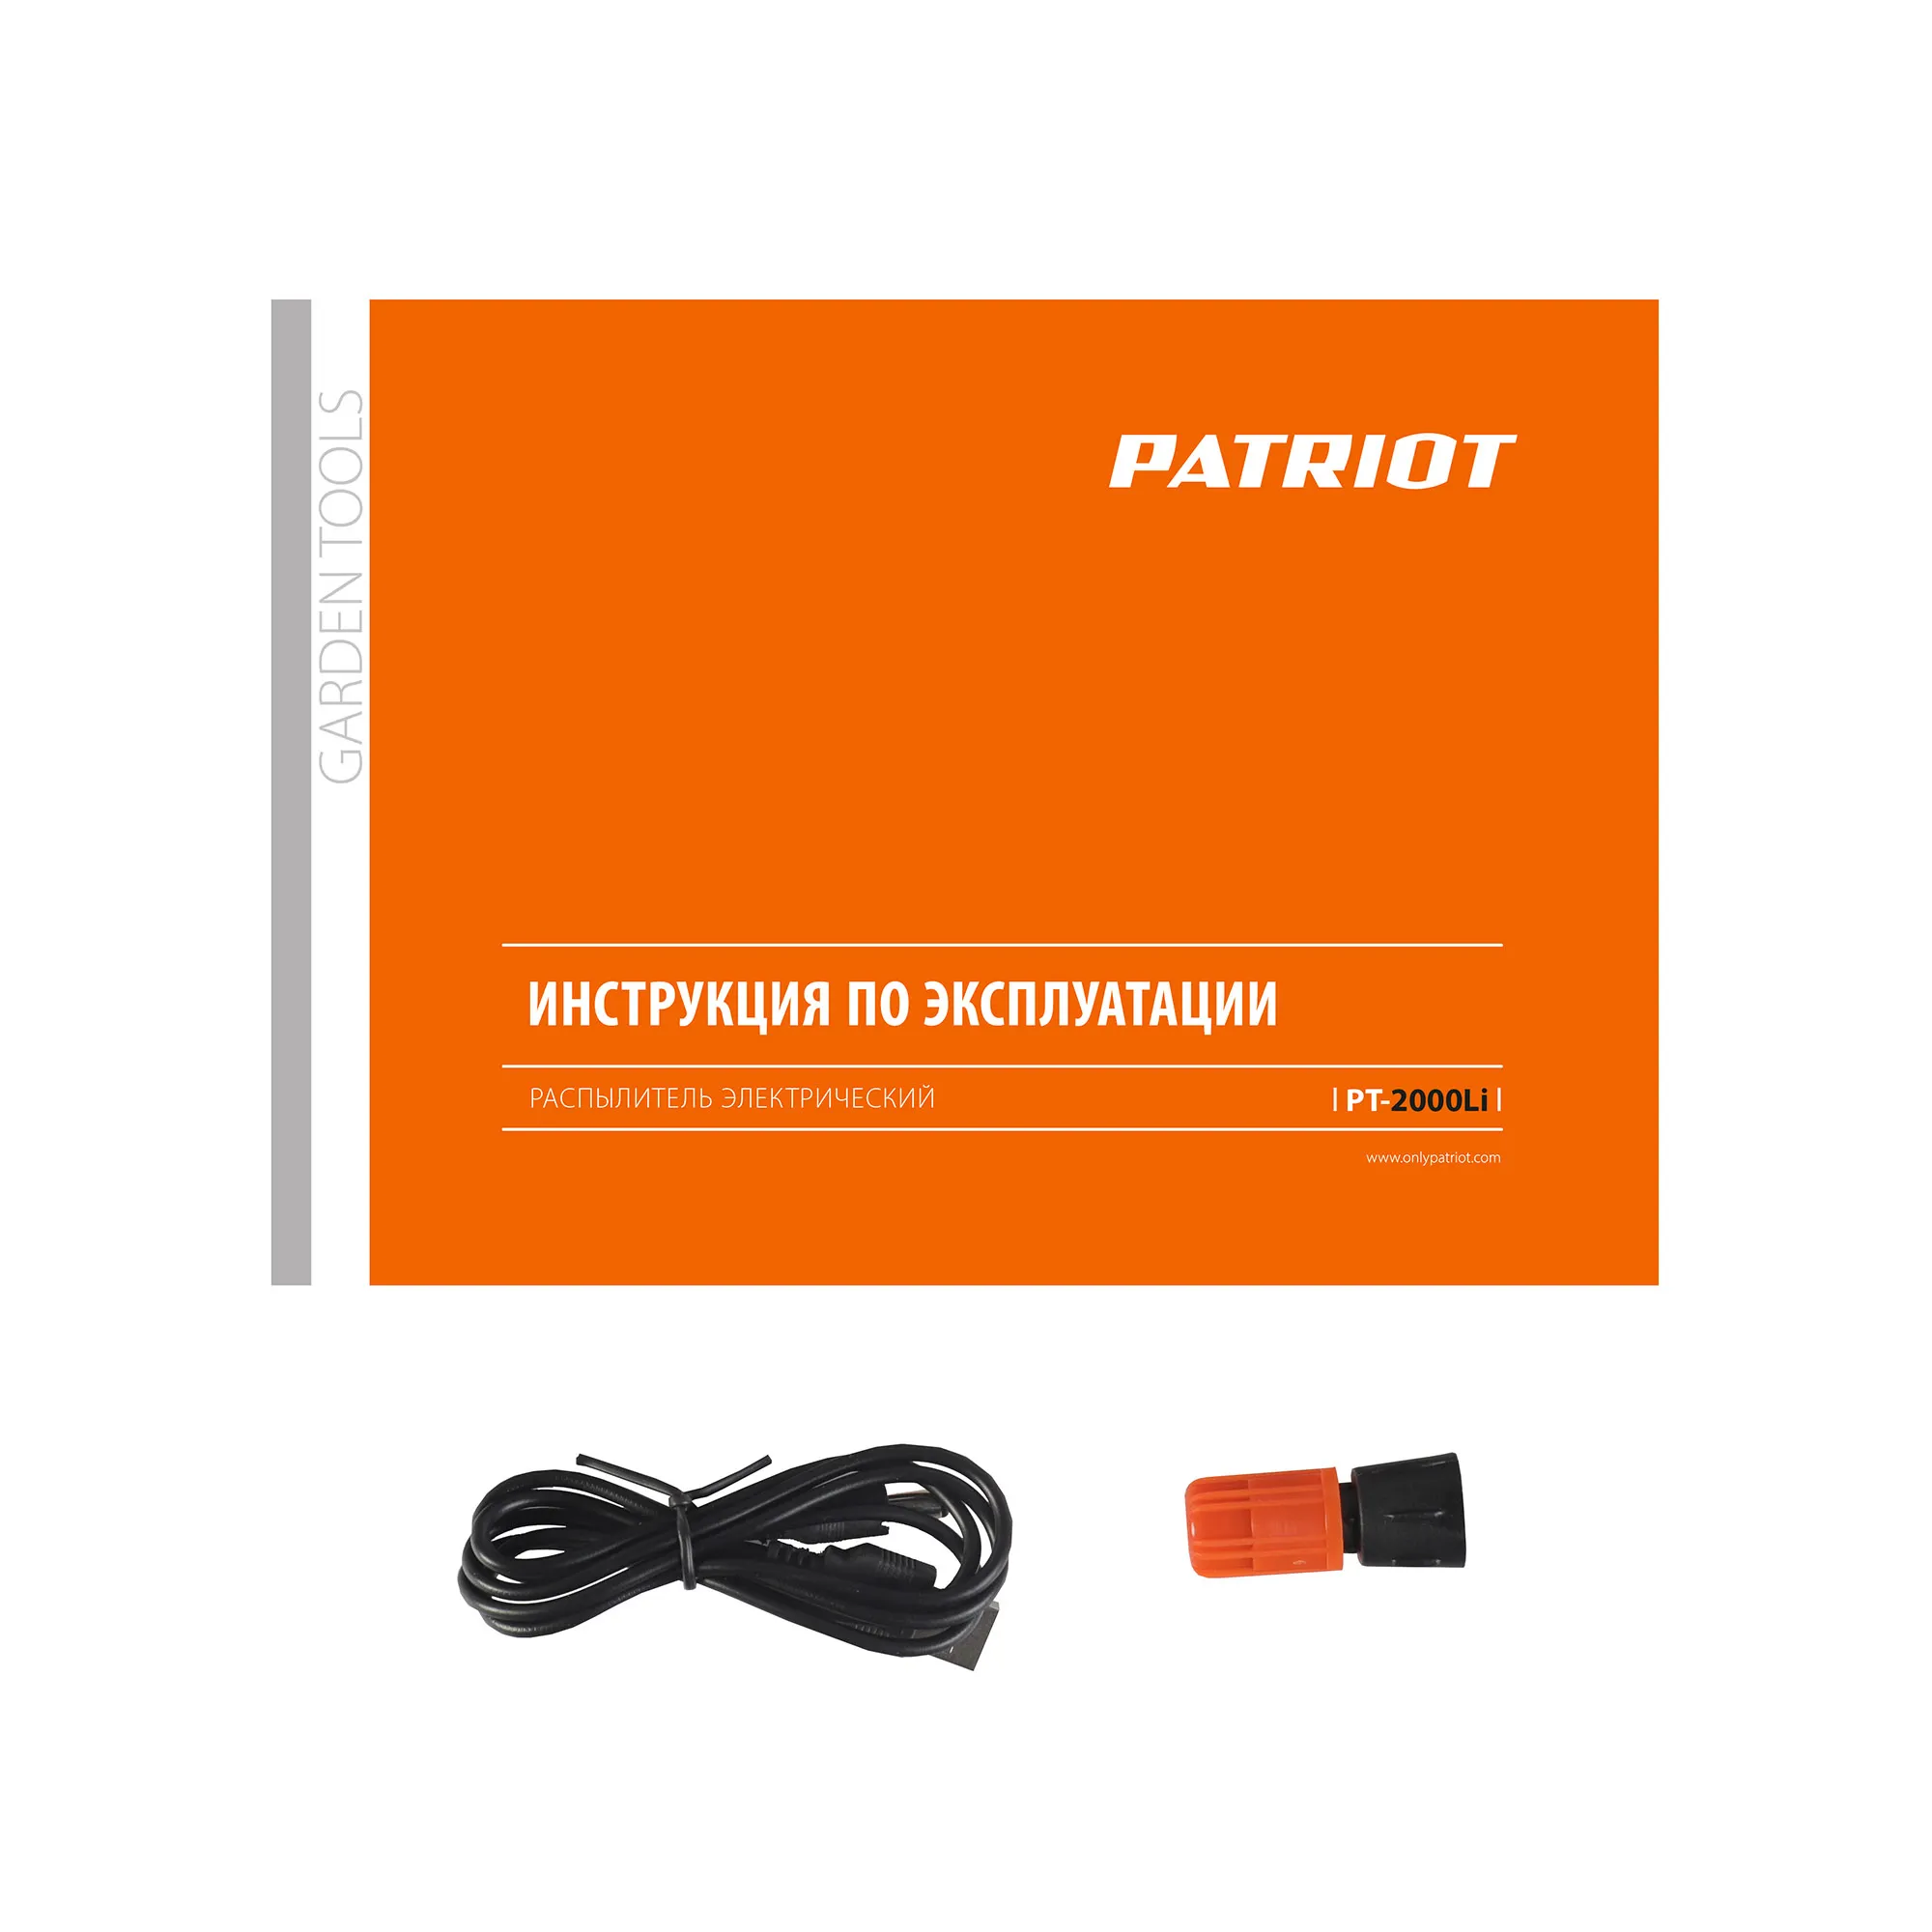 Опрыскиватель аккумуляторный PATRIOT PT 2000 Li 755302605